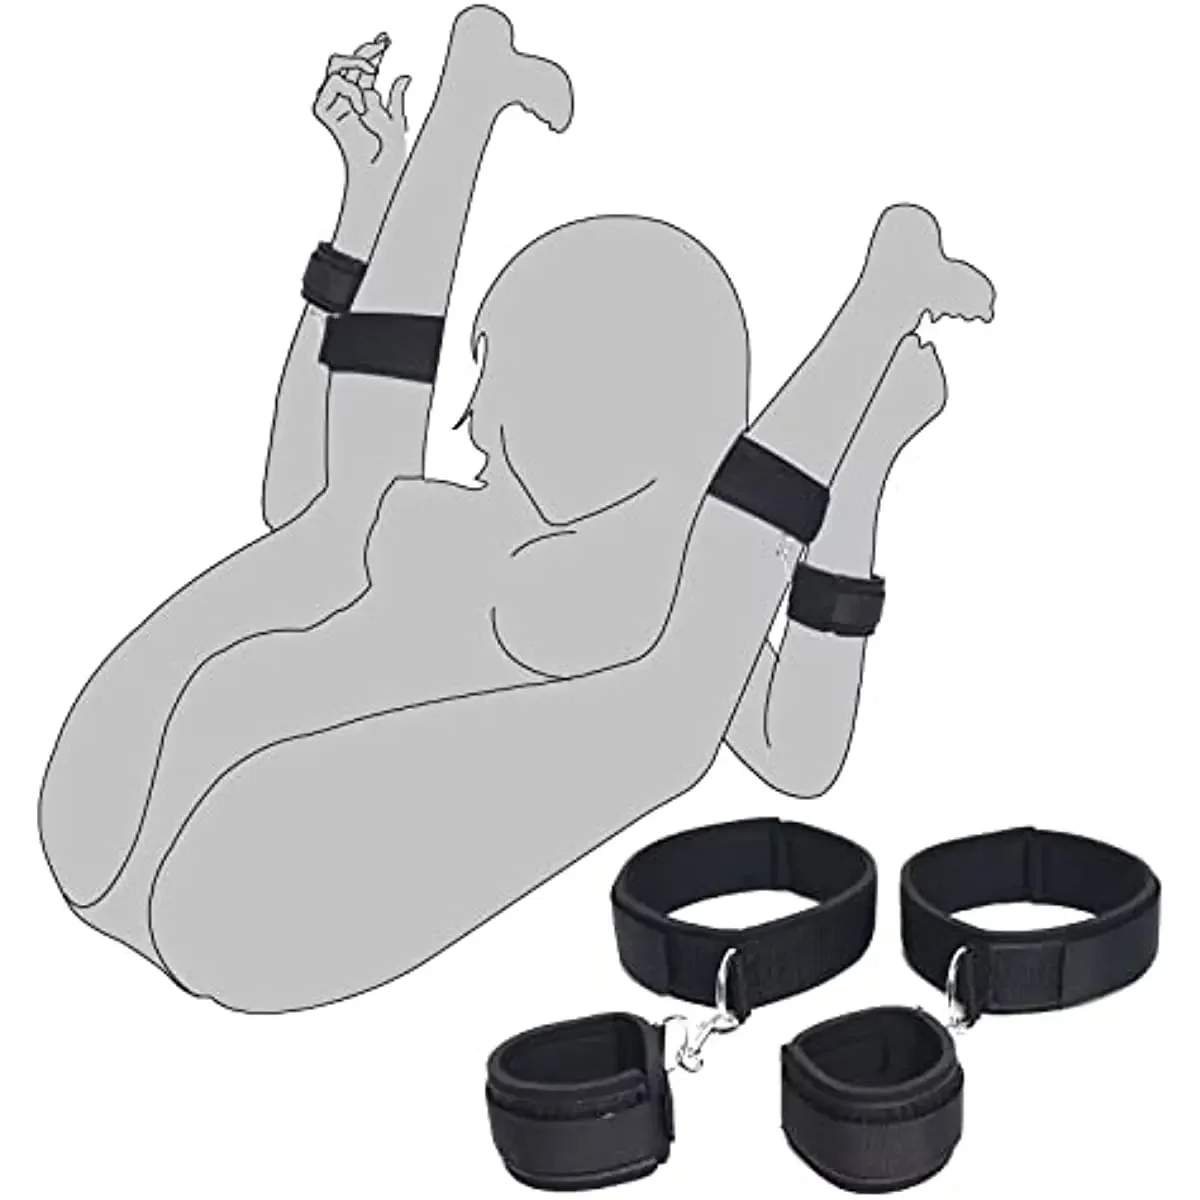 

БДСМ ограничительная деталь бондаж наручники лодыжки набор для взрослых игр эротические аксессуары для мужчин пары геев